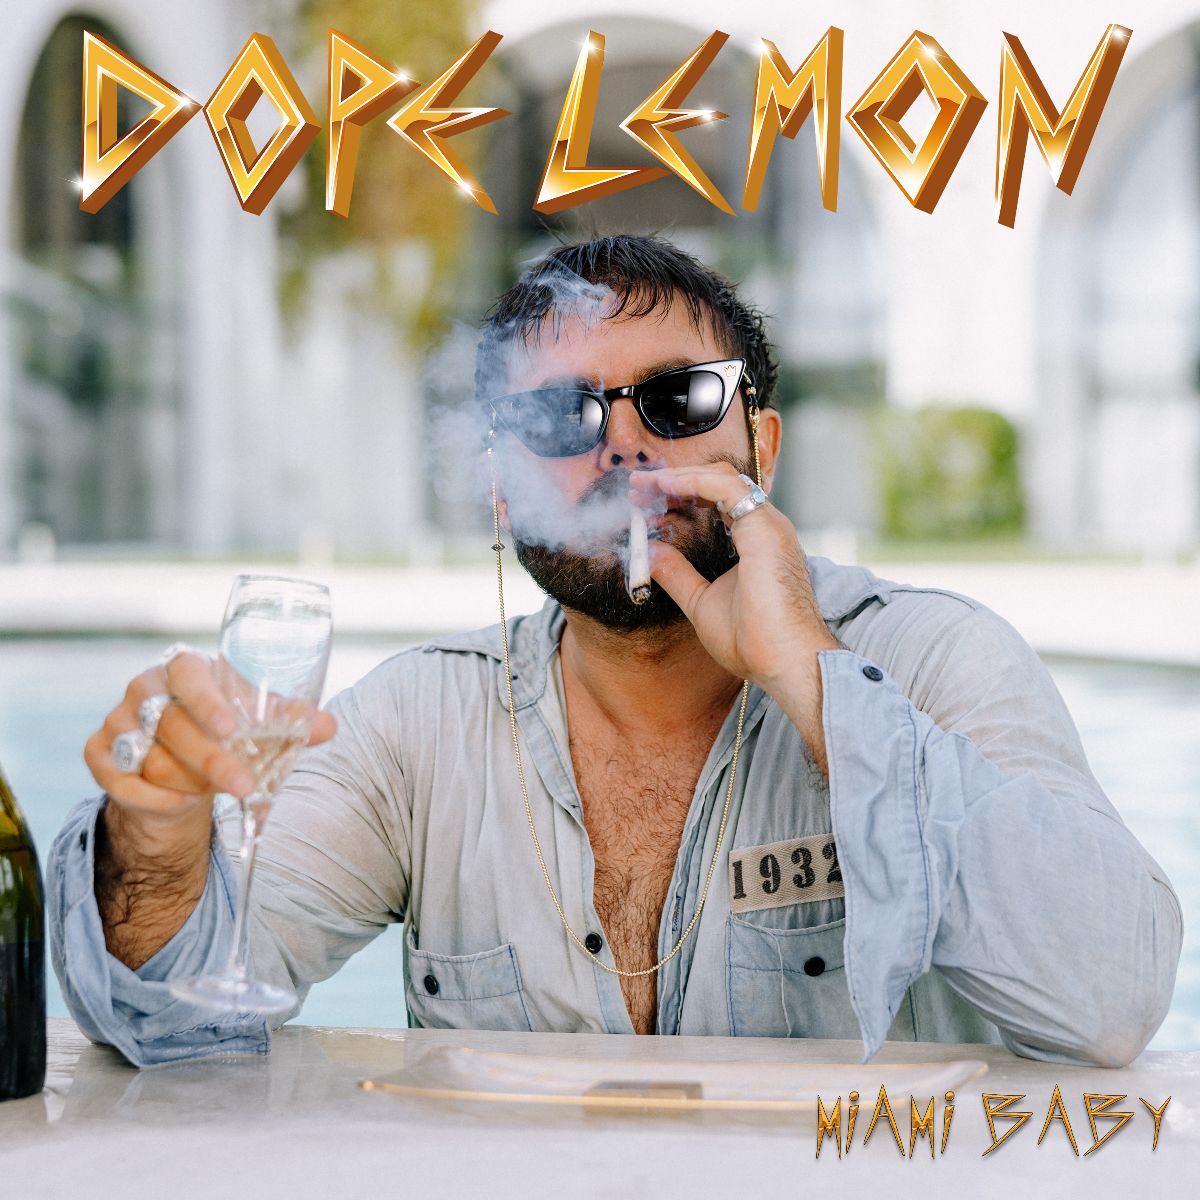 DOPE LEMON publica»Miami Baby»segundo adelanto de su nuevo trabajo - He ...